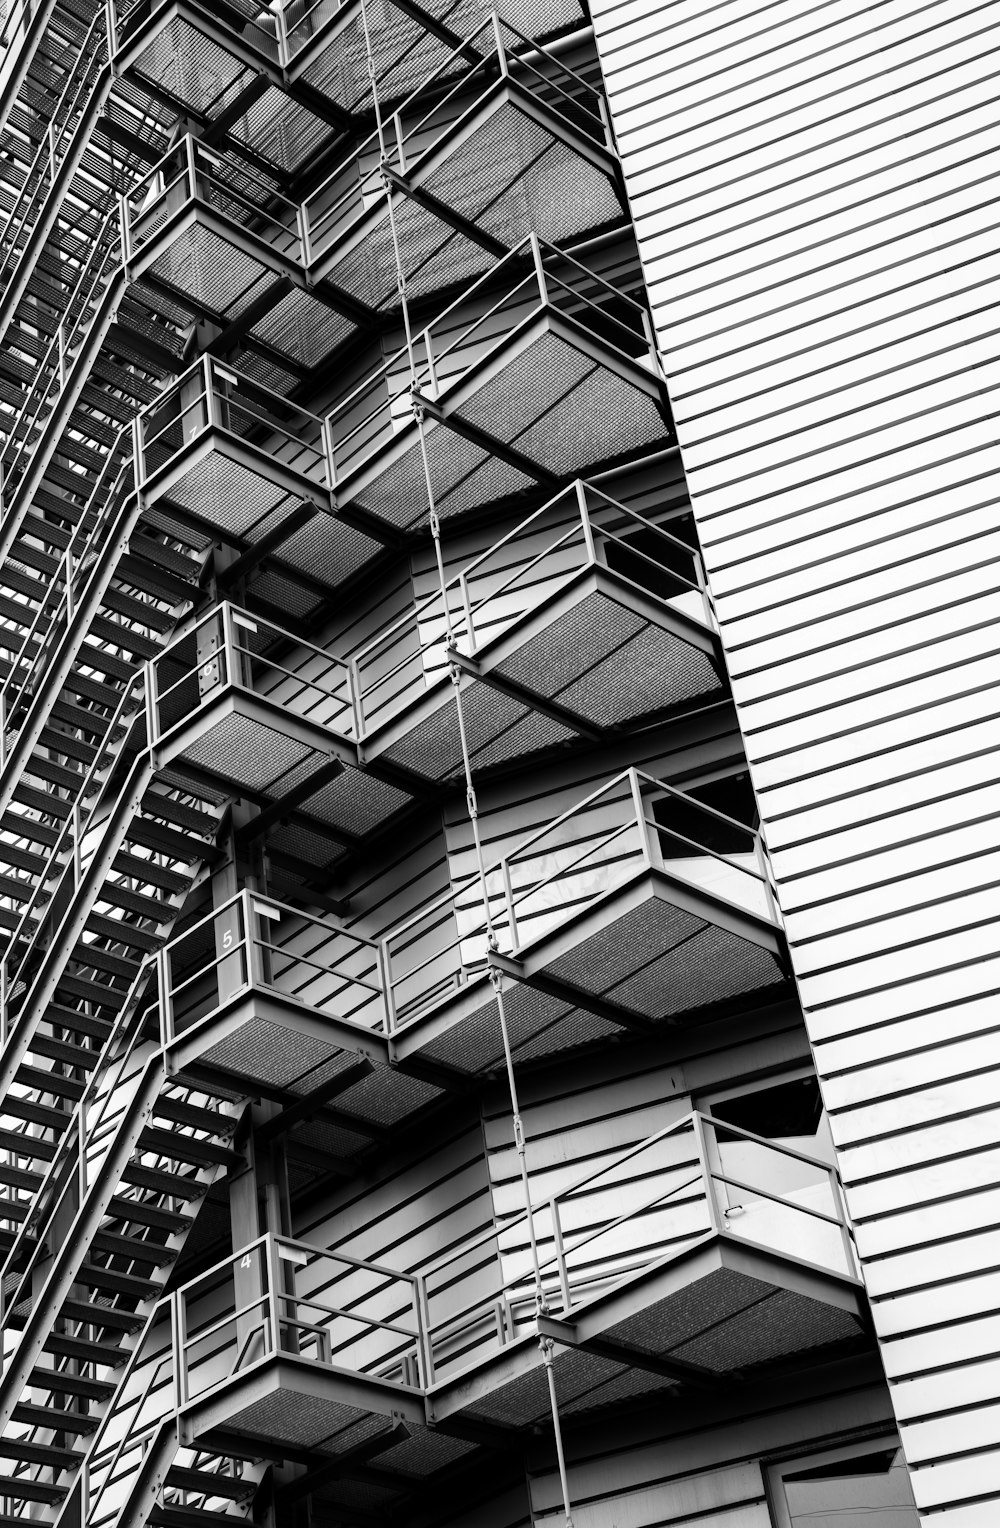 Photographie d’architecture de l’escalier d’un bâtiment